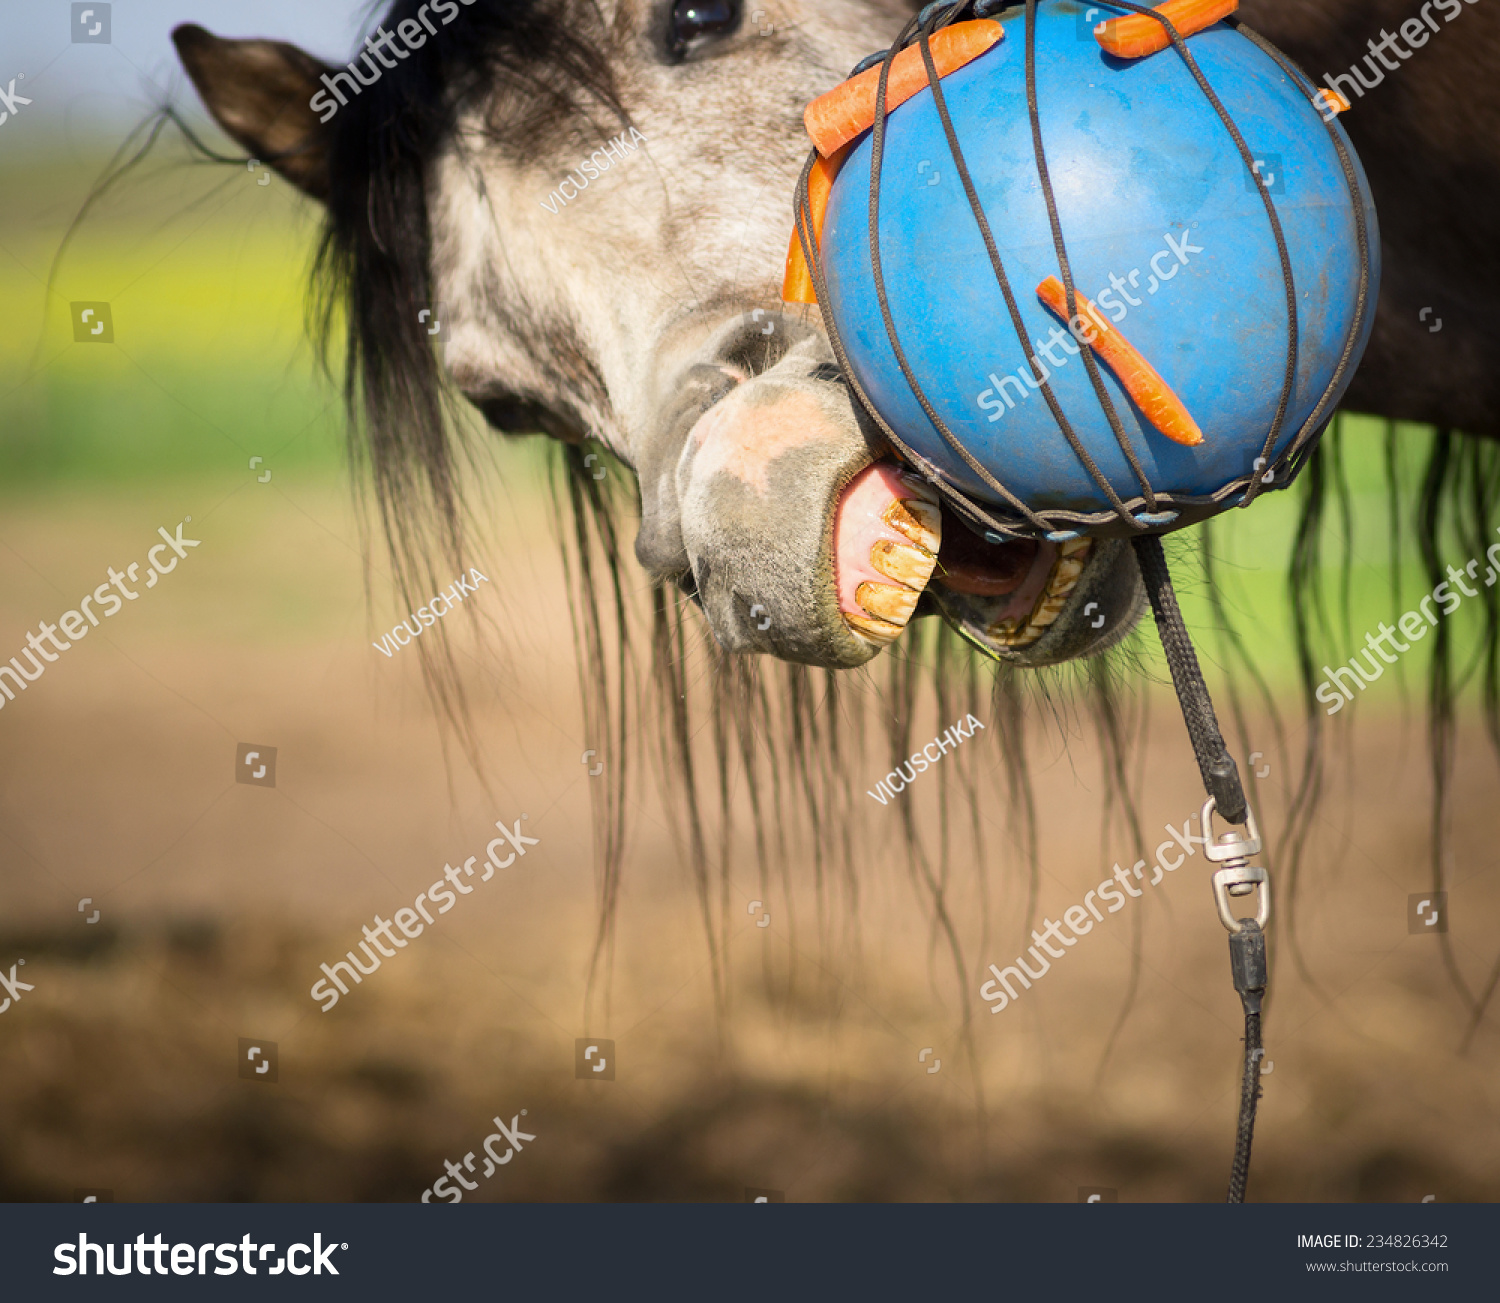 horse carrot ball